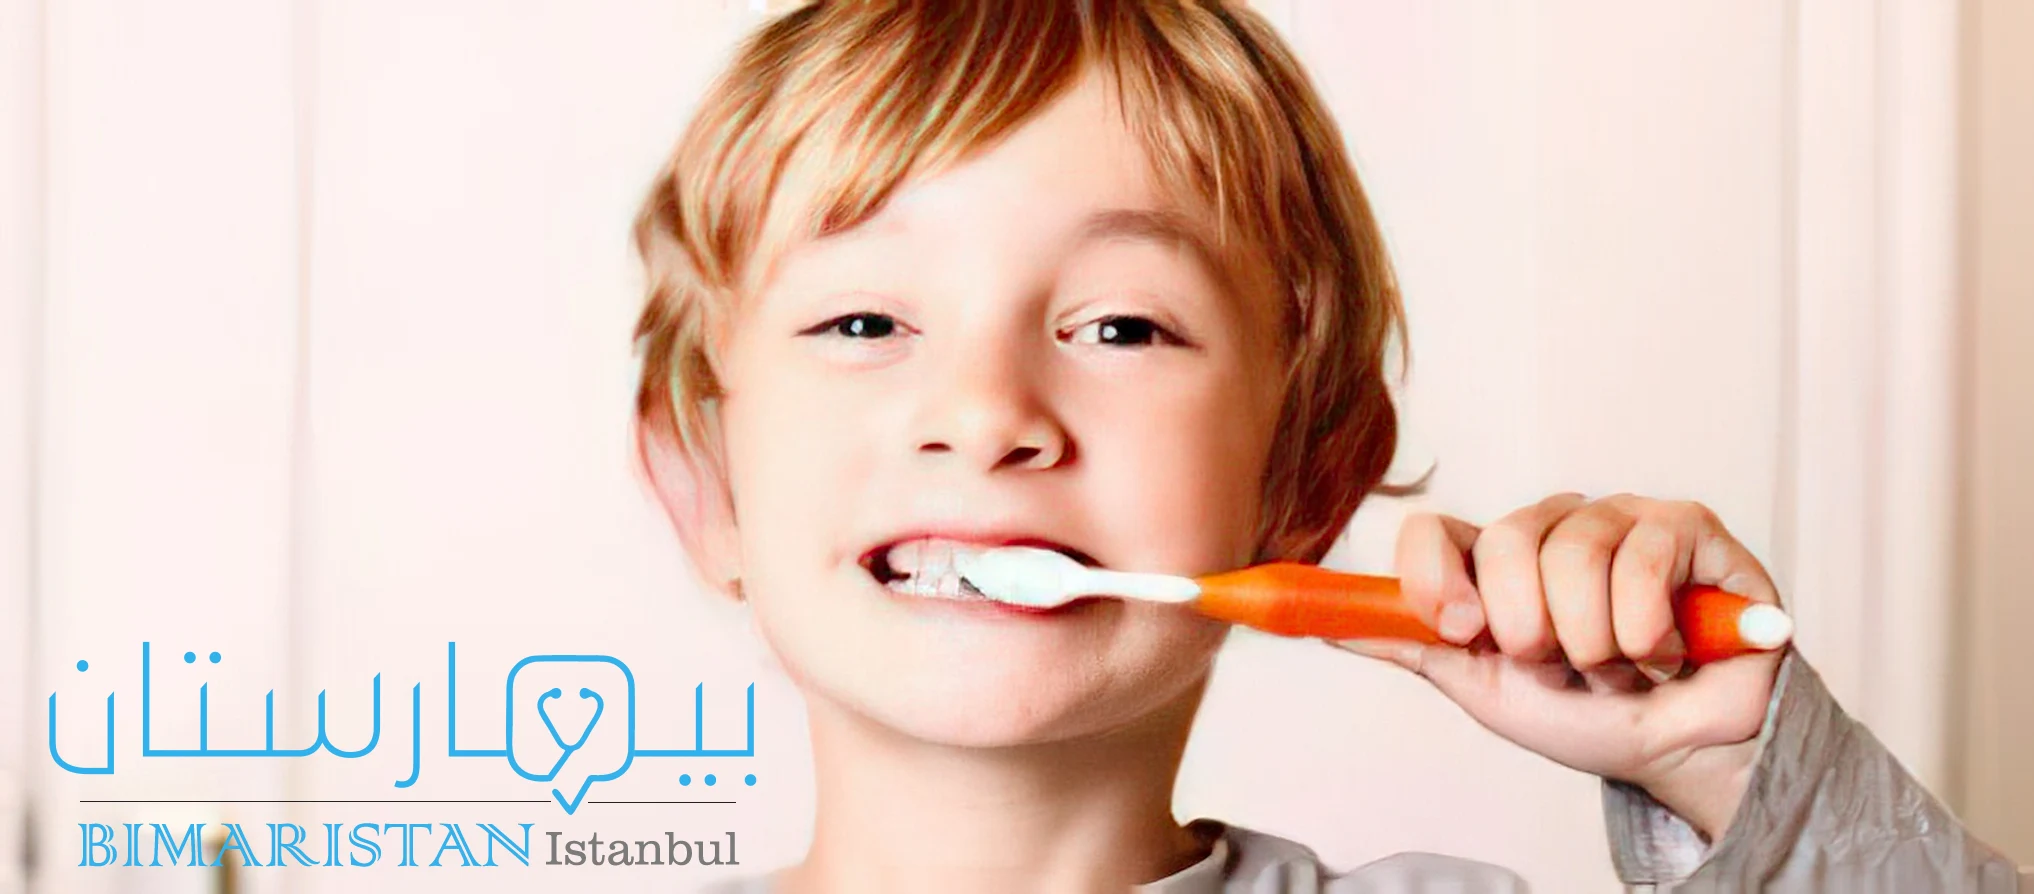 Diş eti ağrısını önlemek için dişleri düzgün fırçalamak